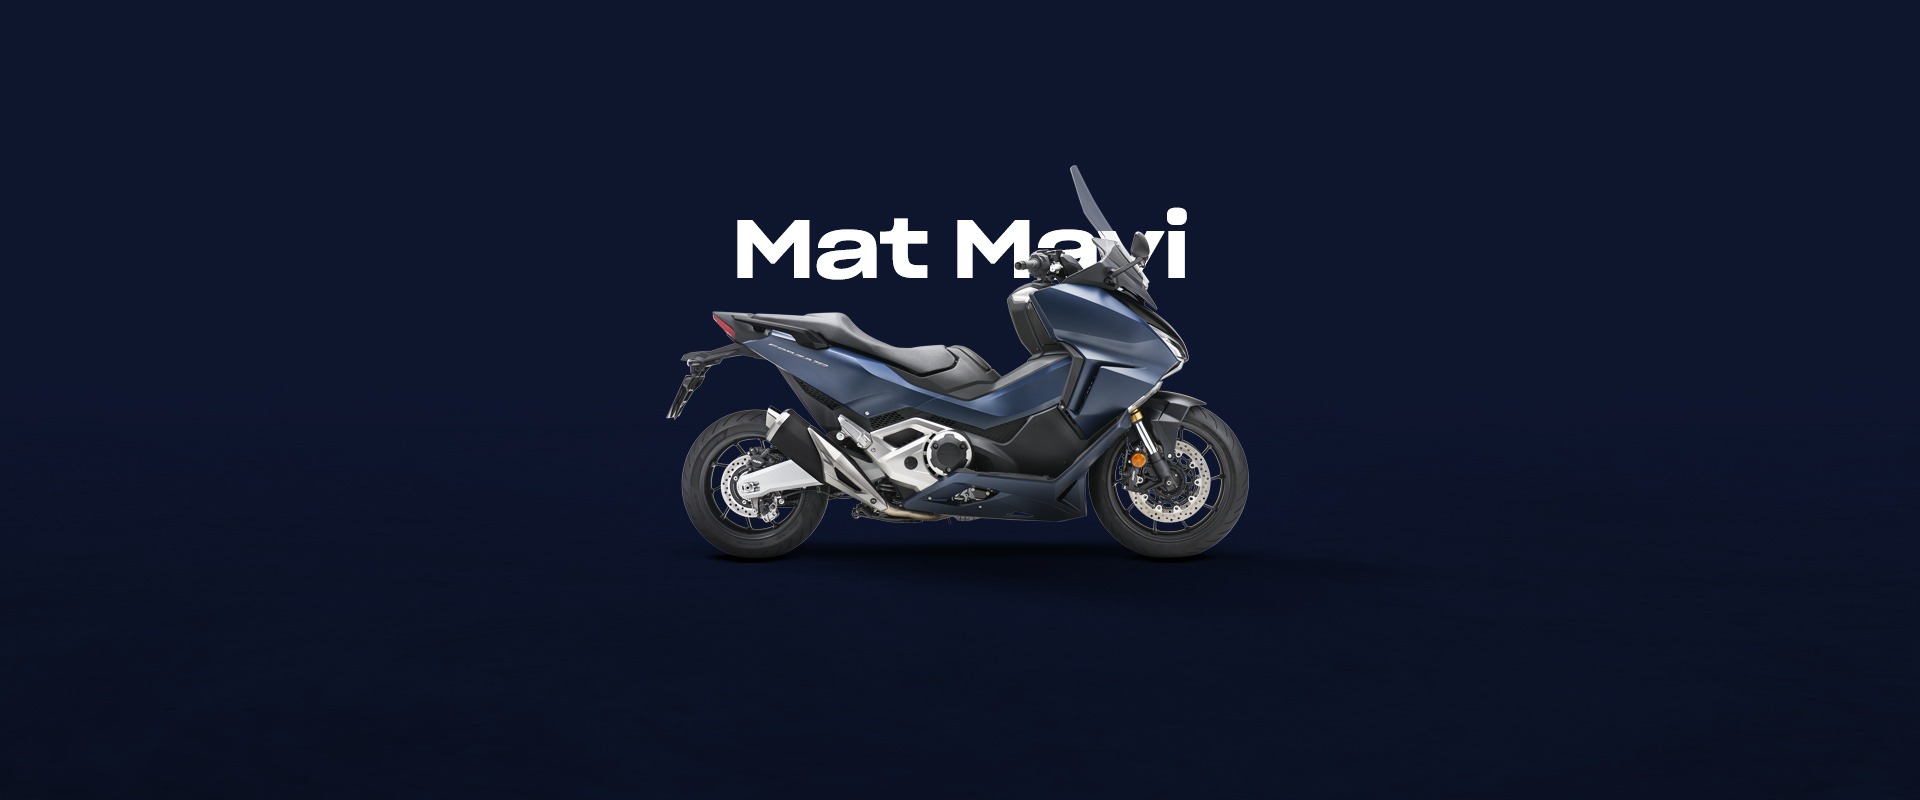  Honda Tansoy Mat Mavi